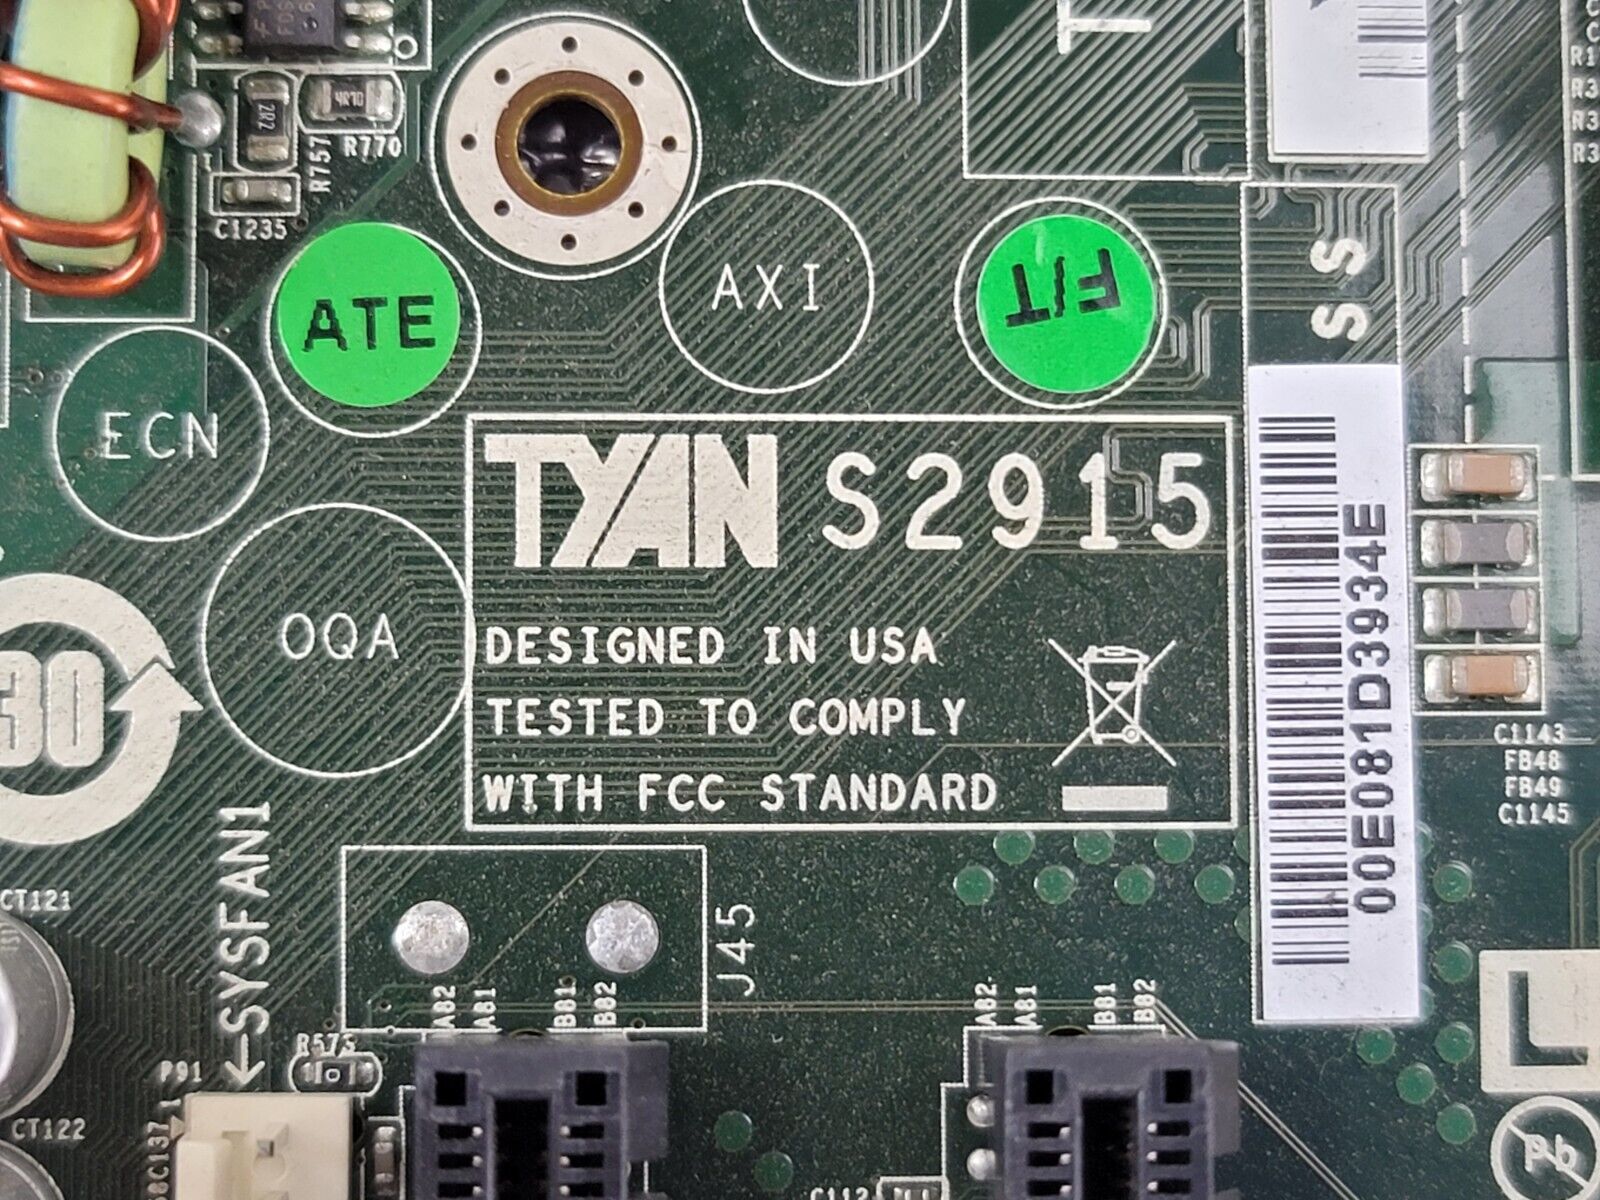 TYAN S2915 Motherboard 2x AMD Opteron 2435 2.6GHz 8GB RAM Missing Fan